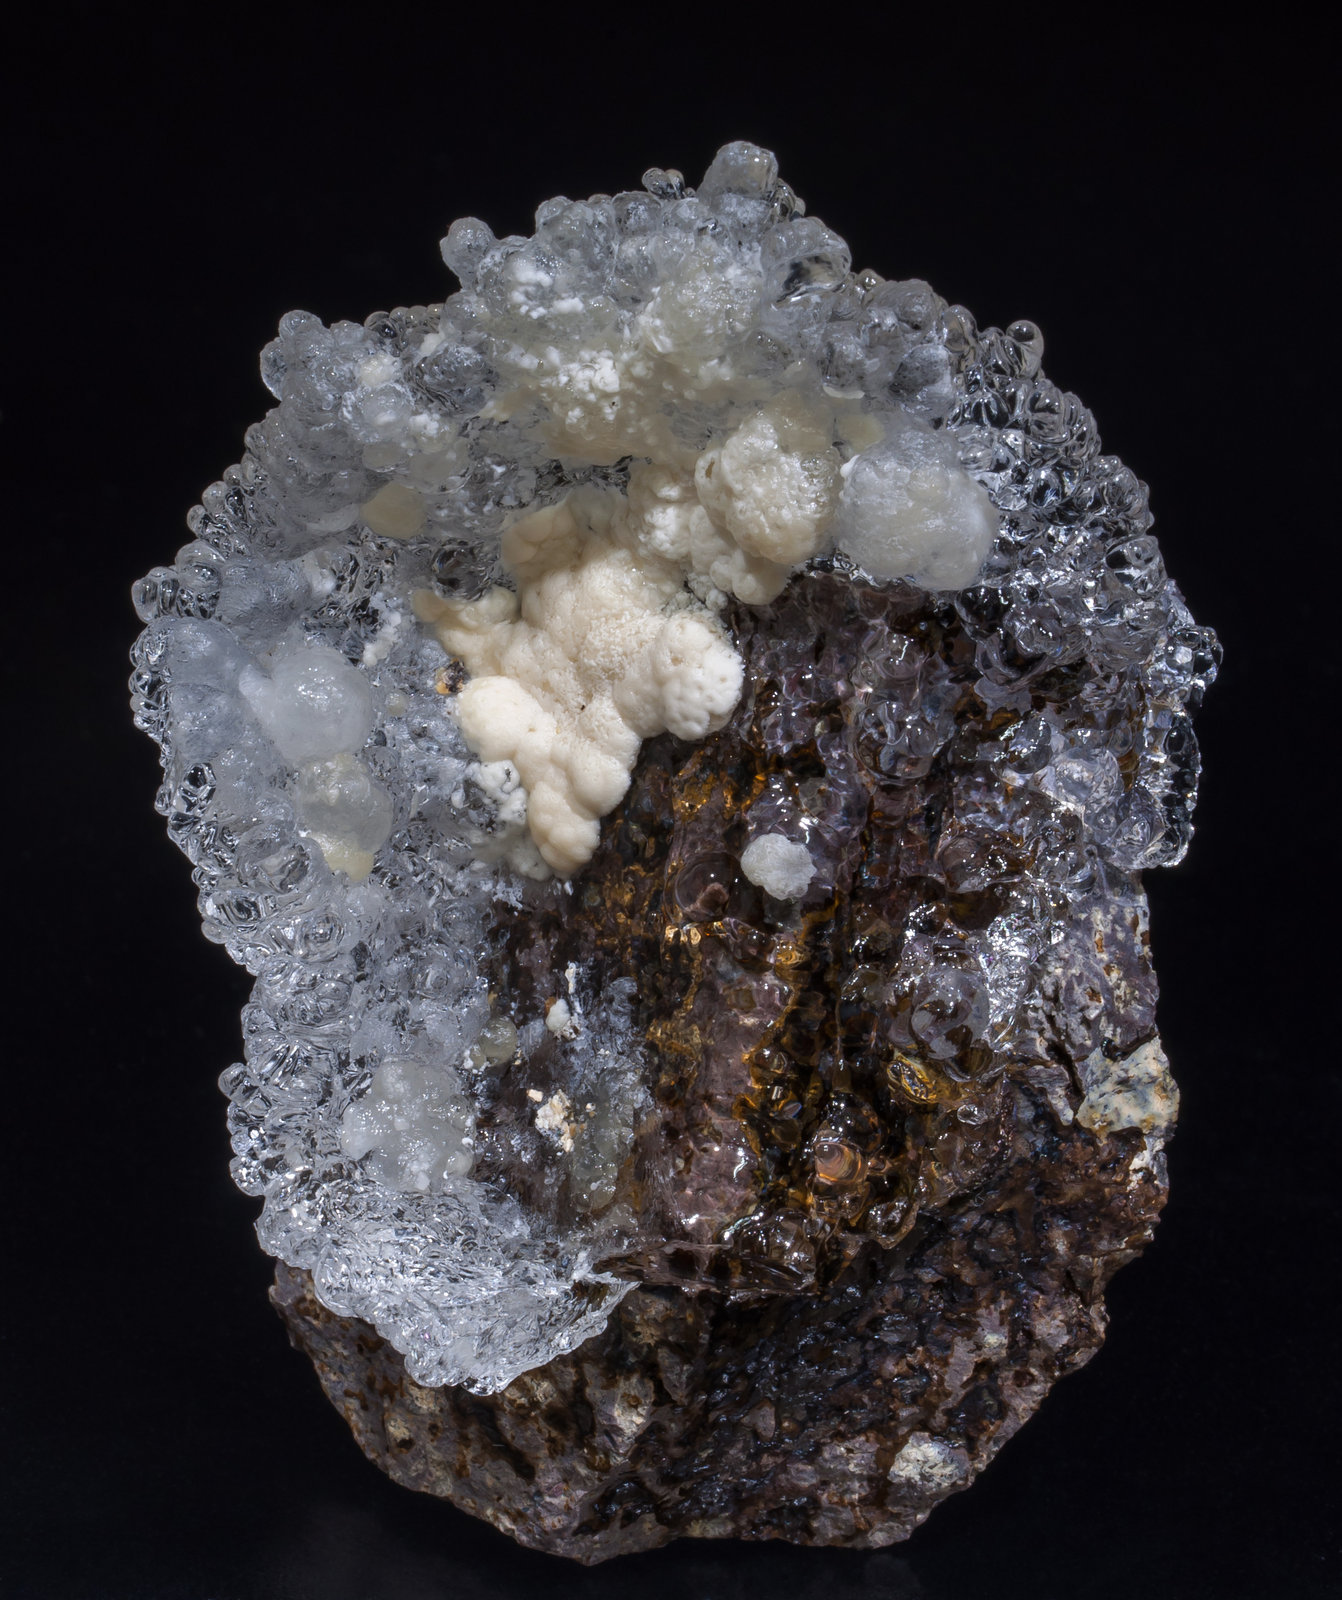 specimens/s_imagesAC1/Opal_hyalite-EH67AC1f.jpg